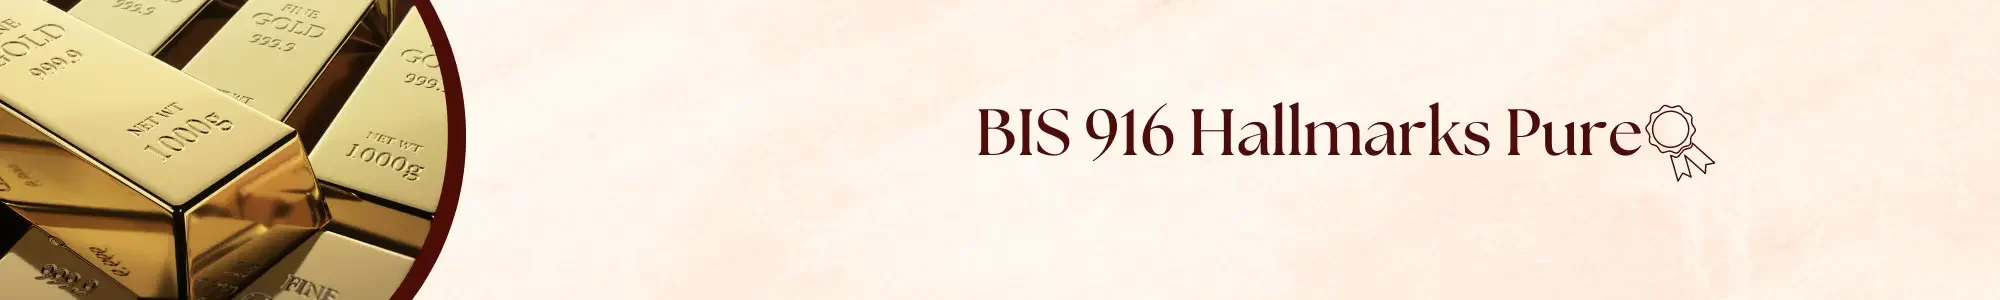 BiS 916 hallmarks pure